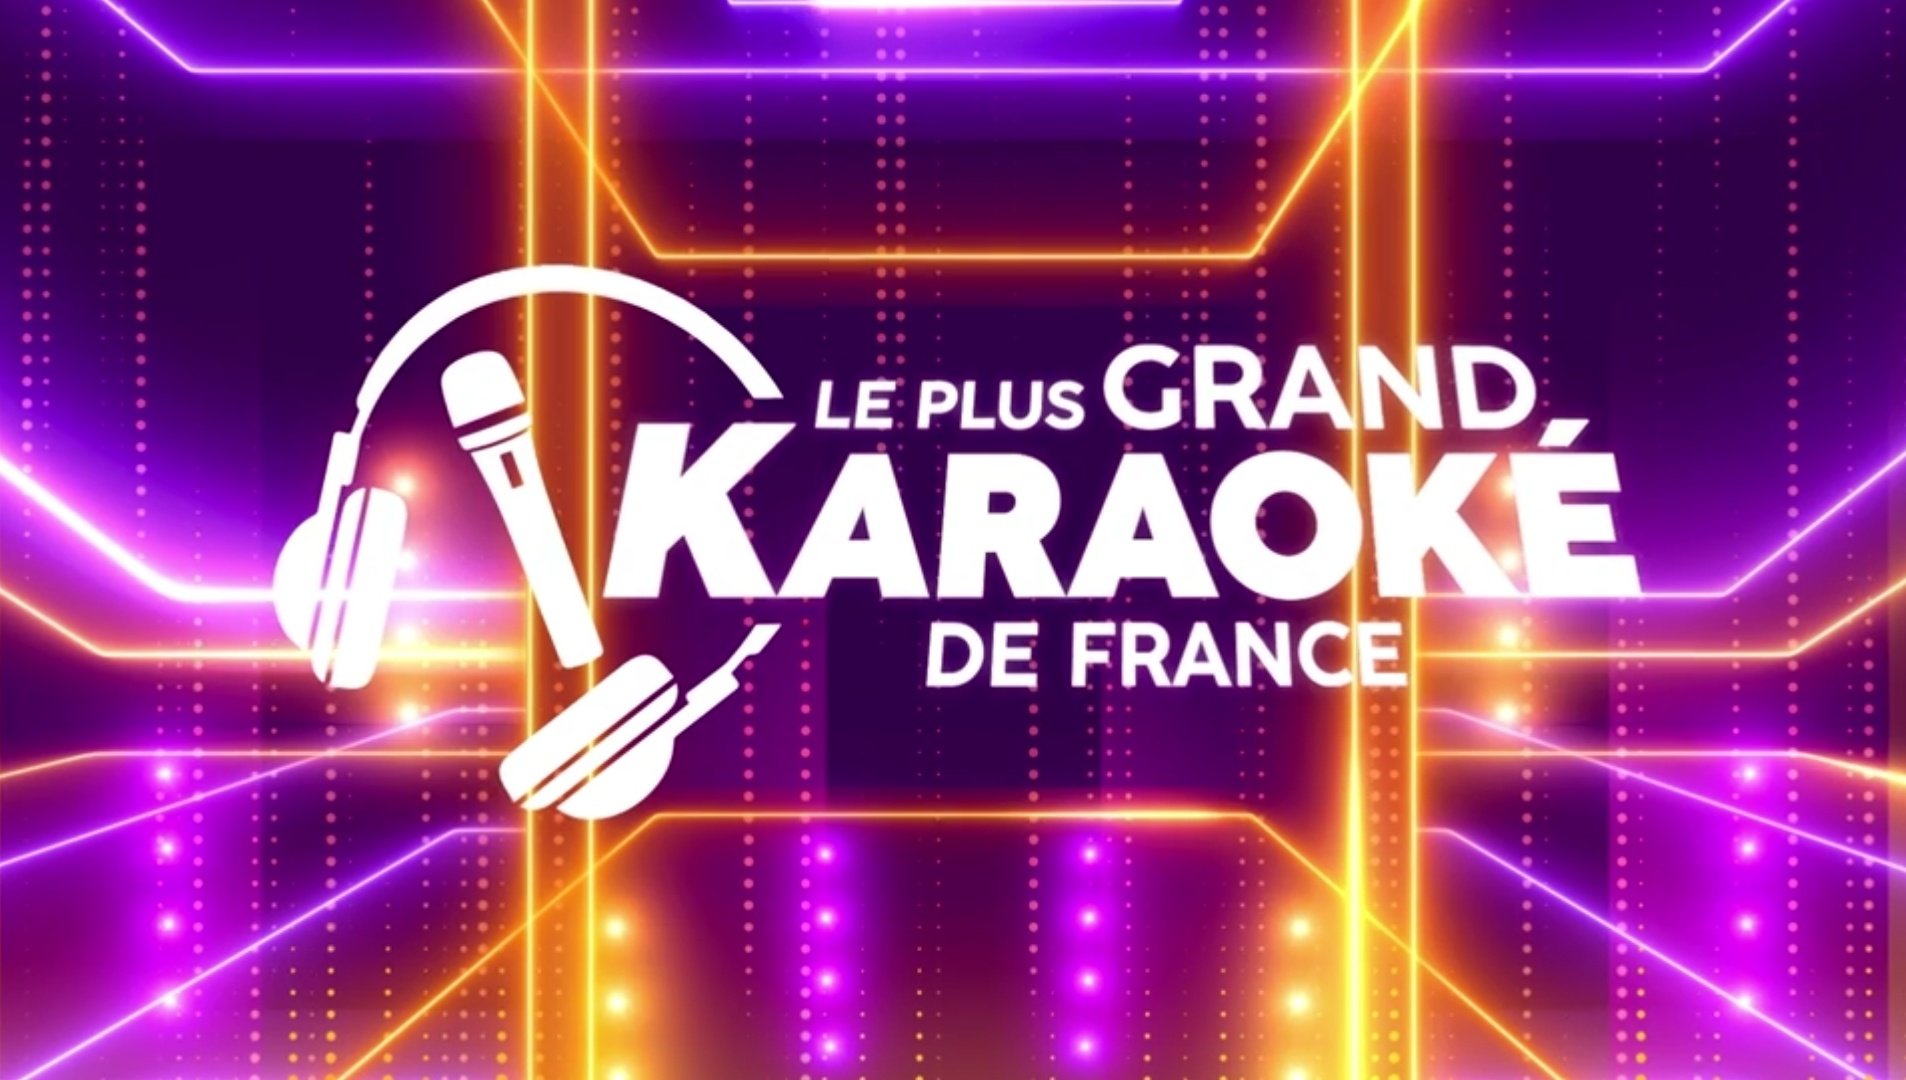 Le plus grand karaoké de France - eric antoine - elodie gossuin - M6 -